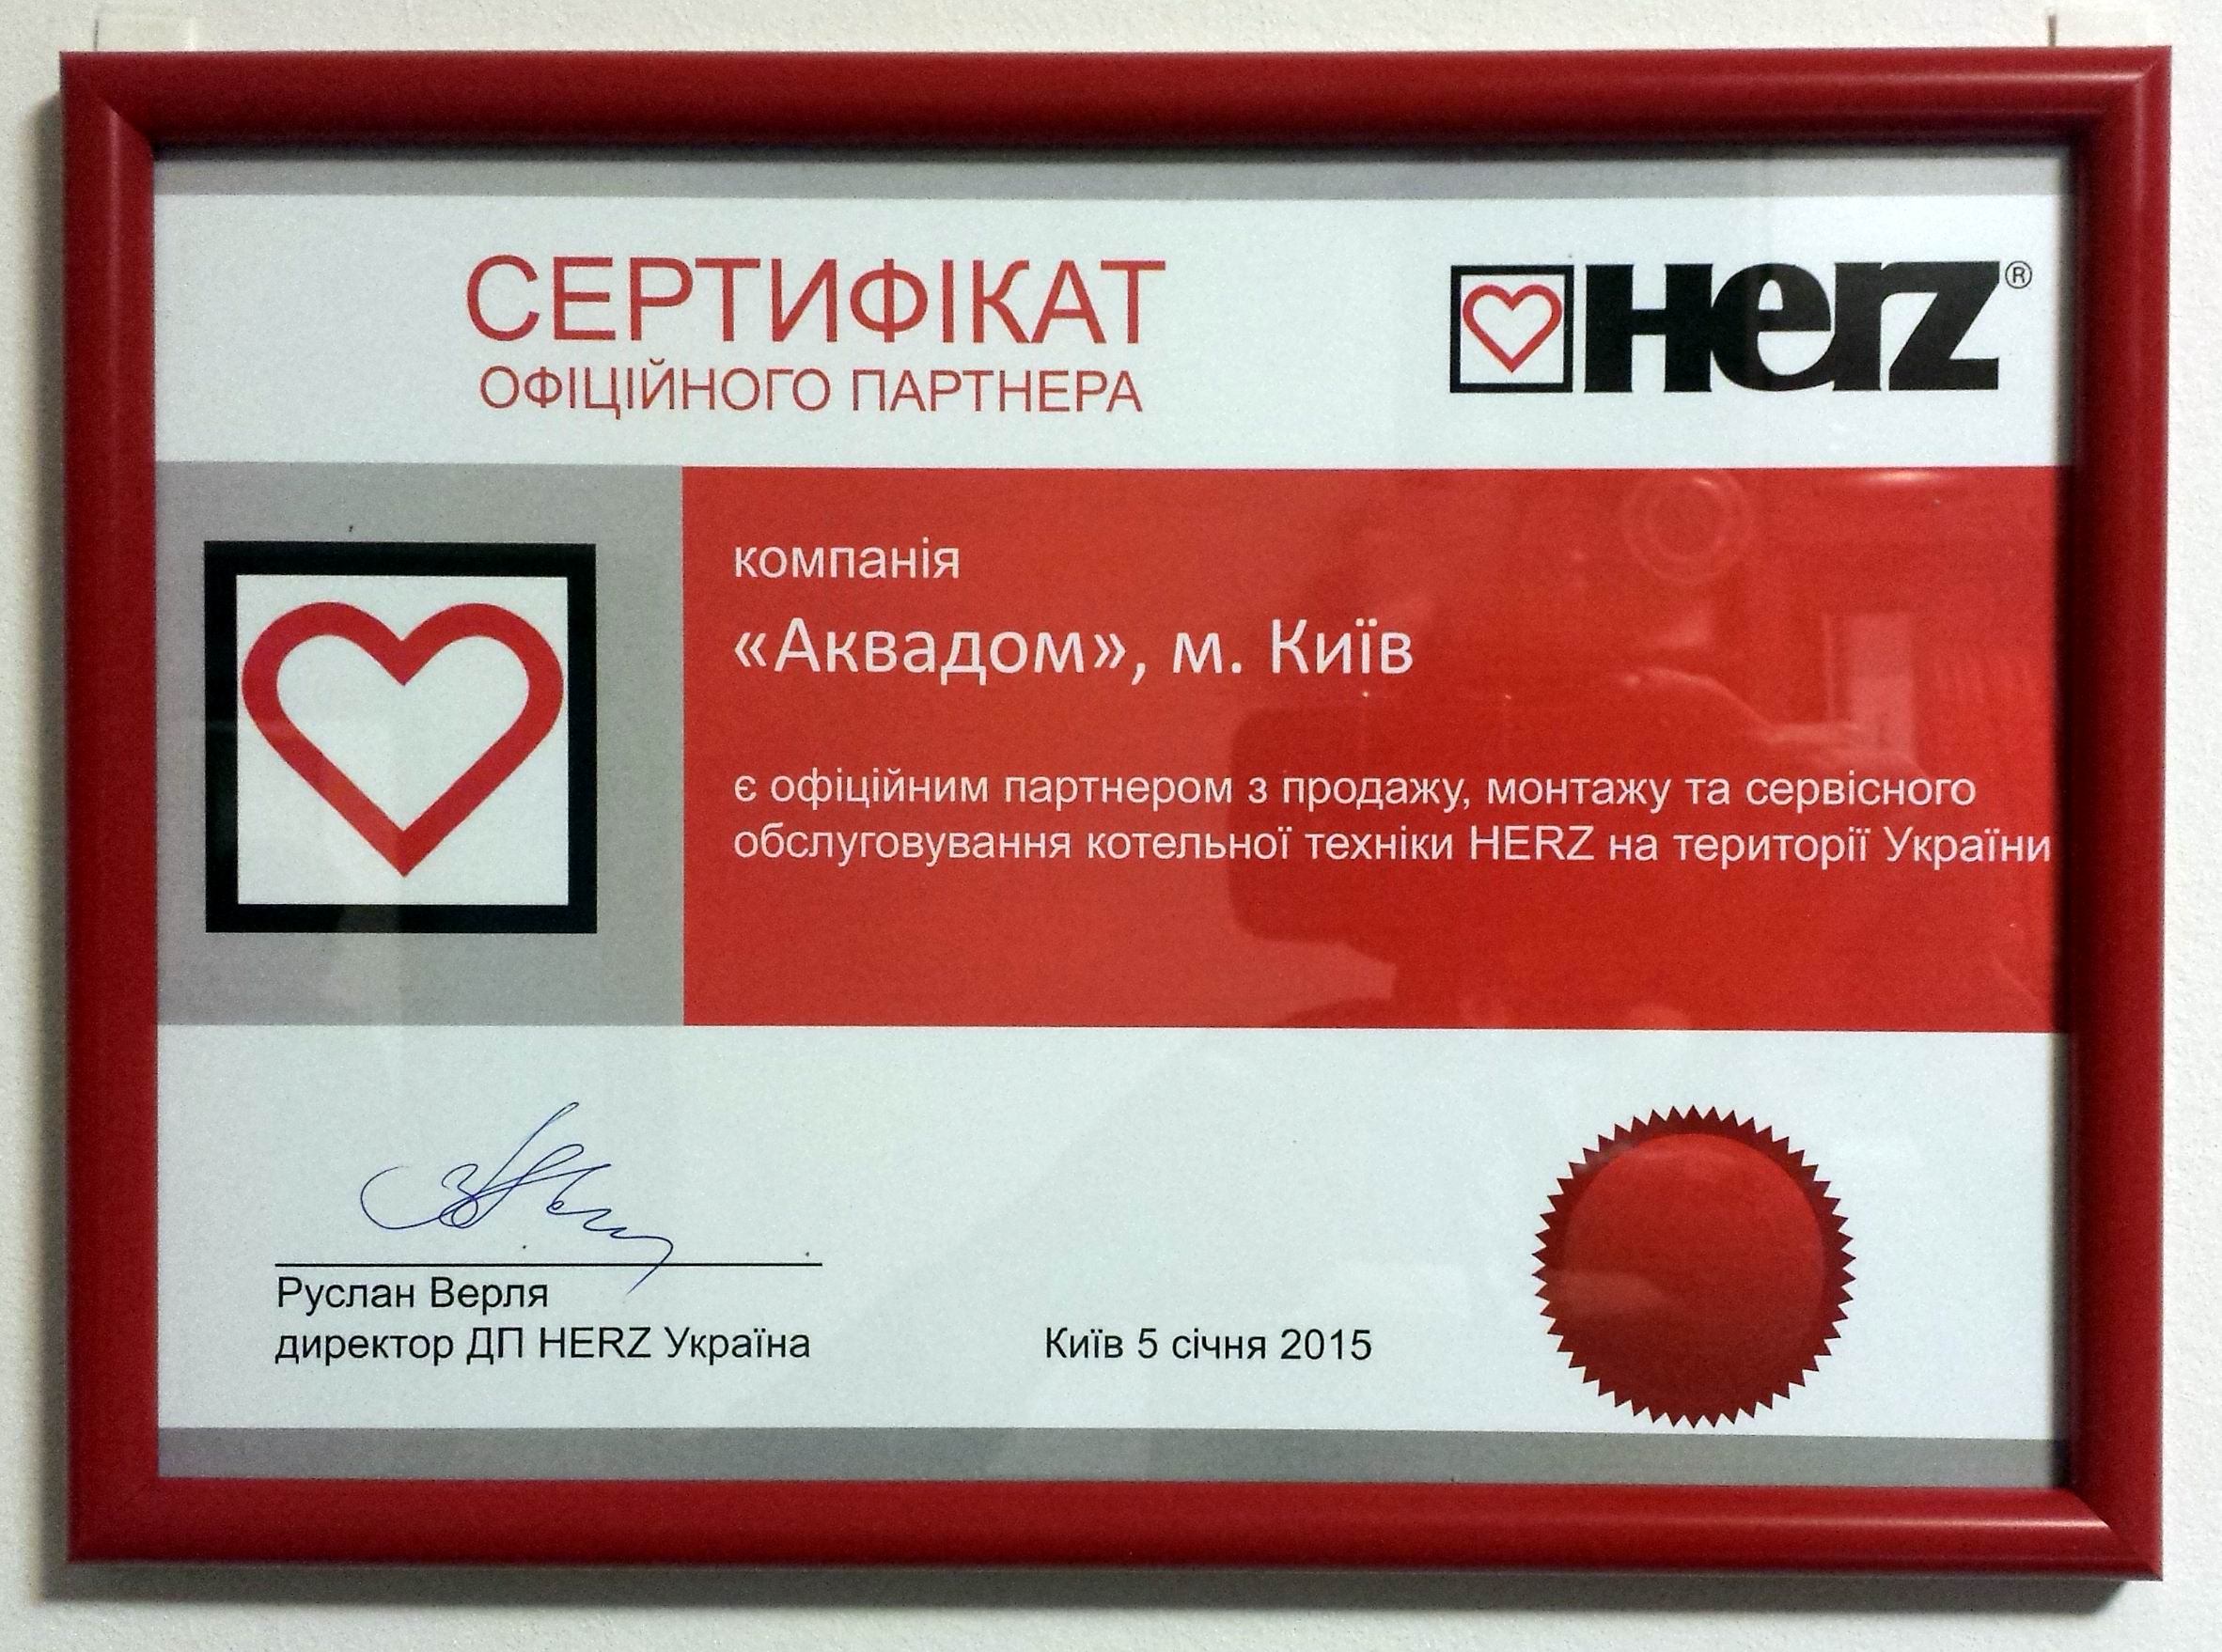 Сертификат официального партнера HERZ